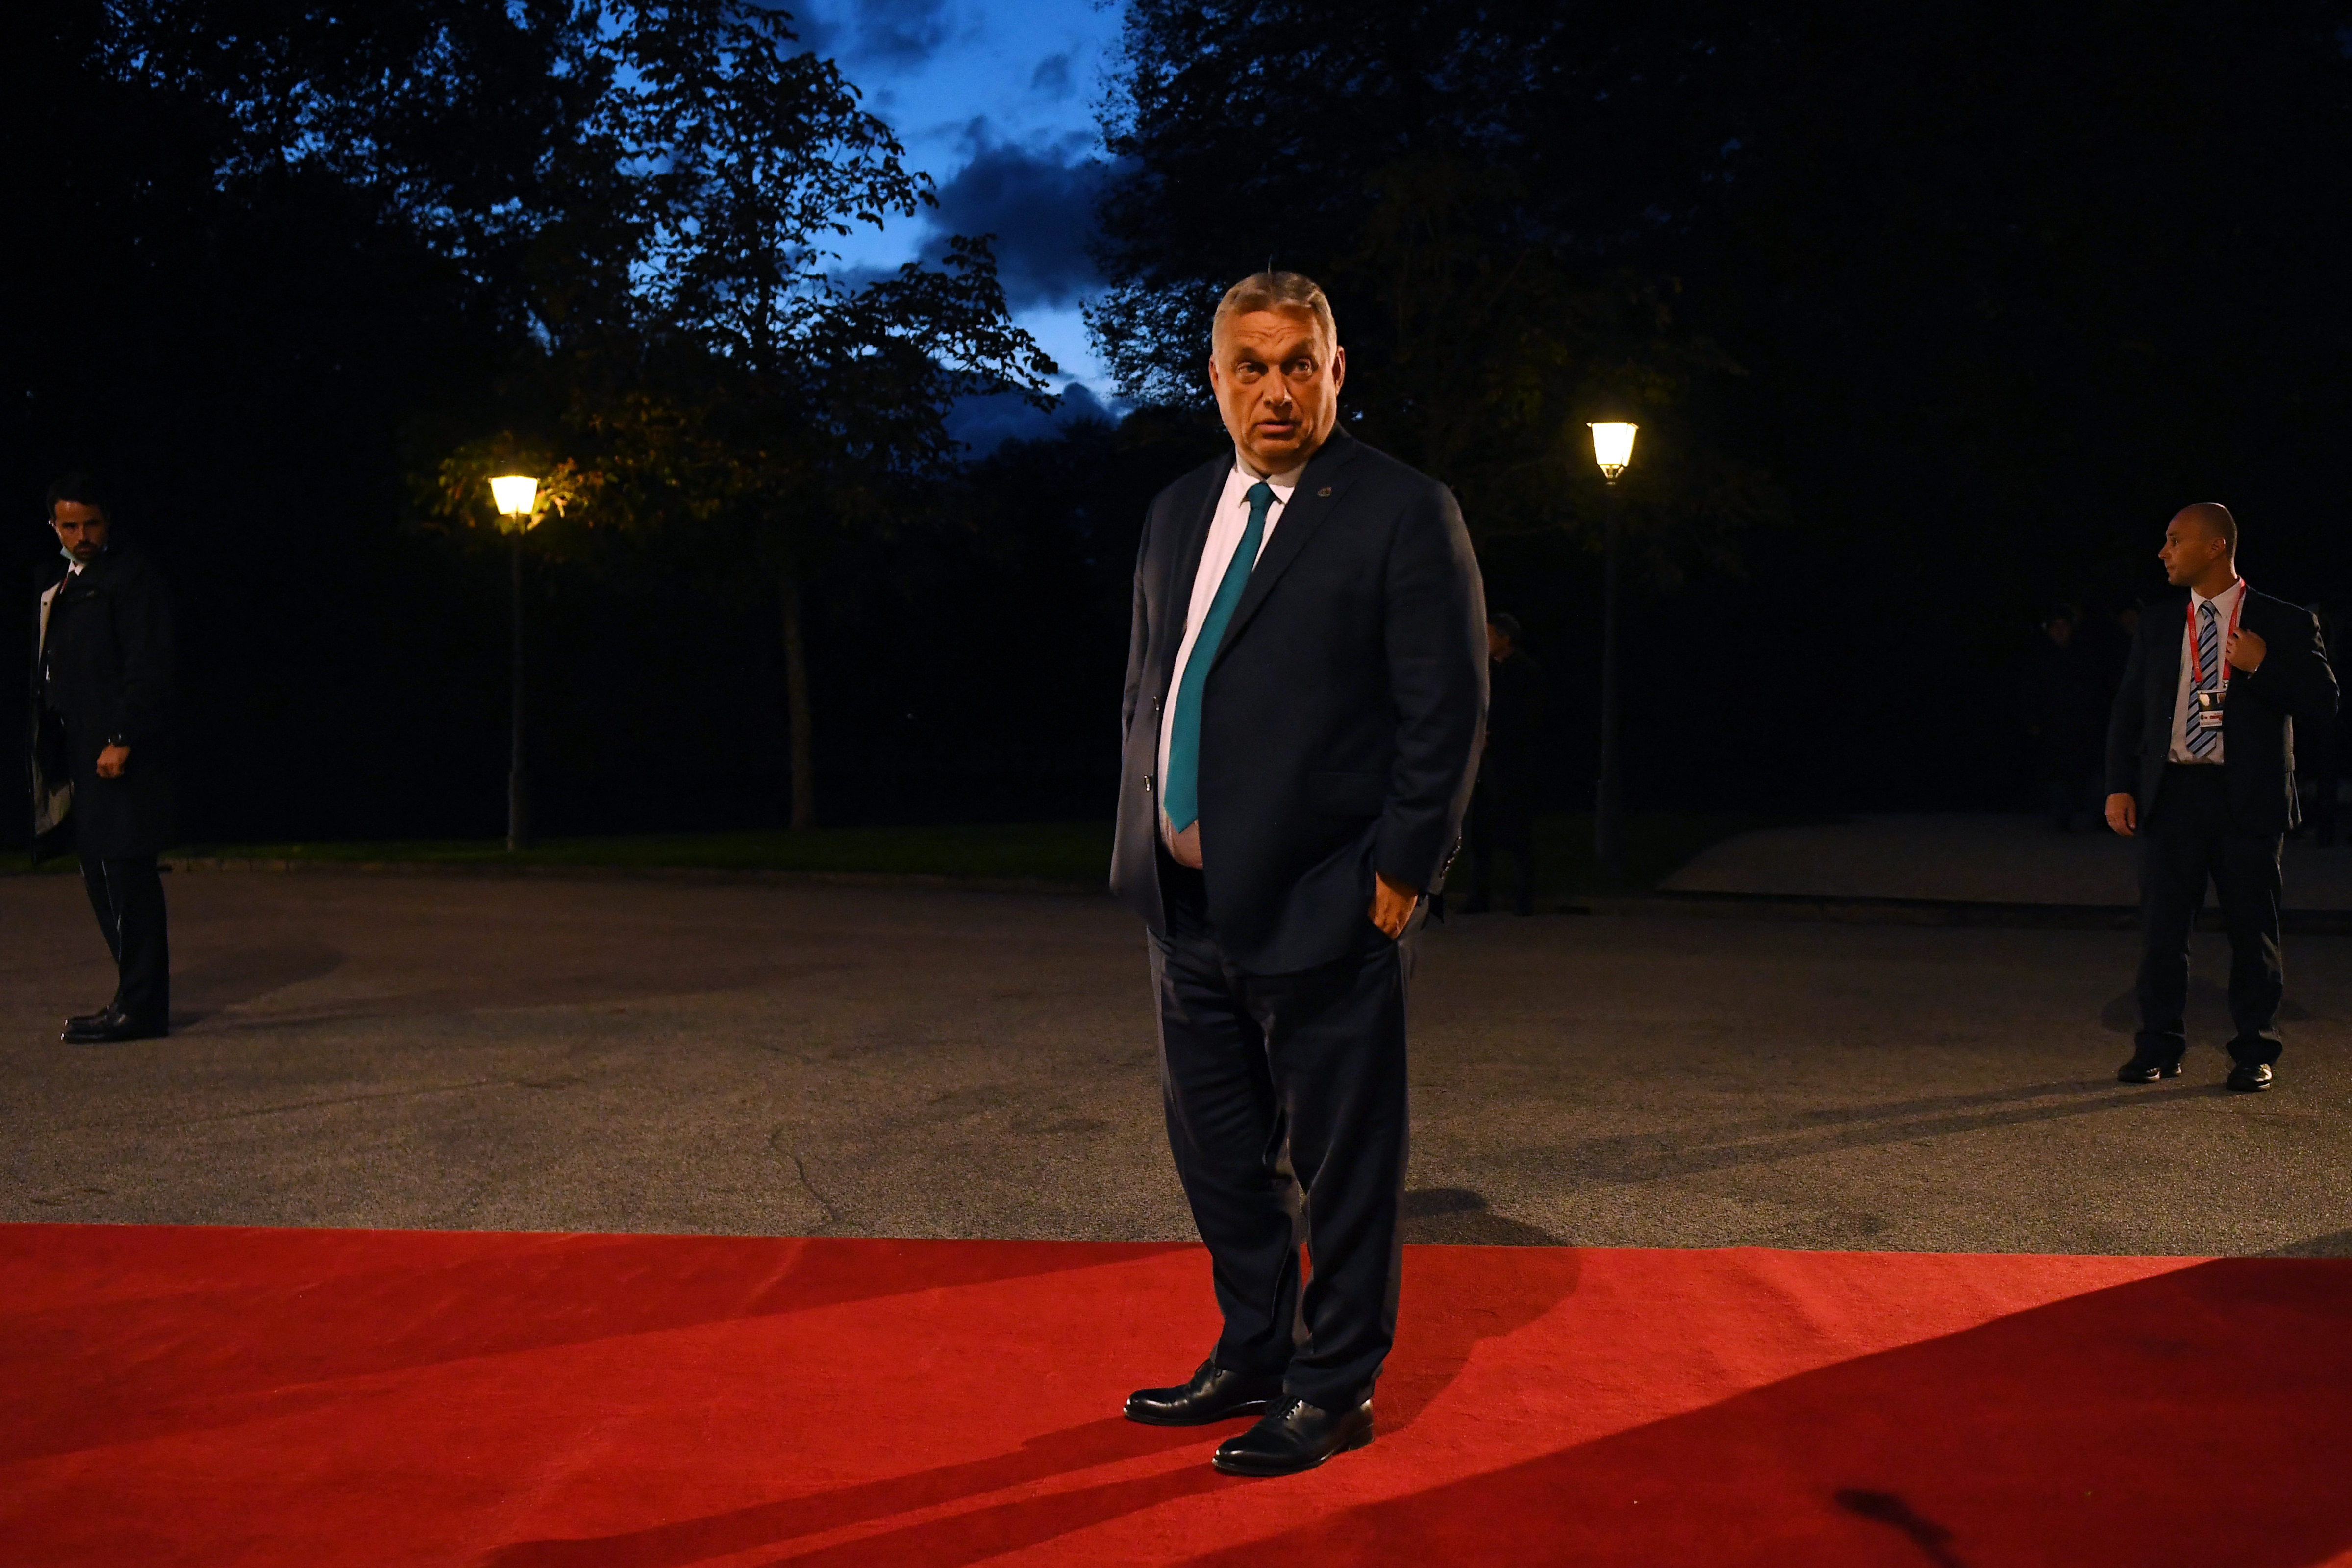 Estére meg is jelent a határozat, amivel Orbán leállította a külföldi földek megszerzésére kitalált tőkealapot